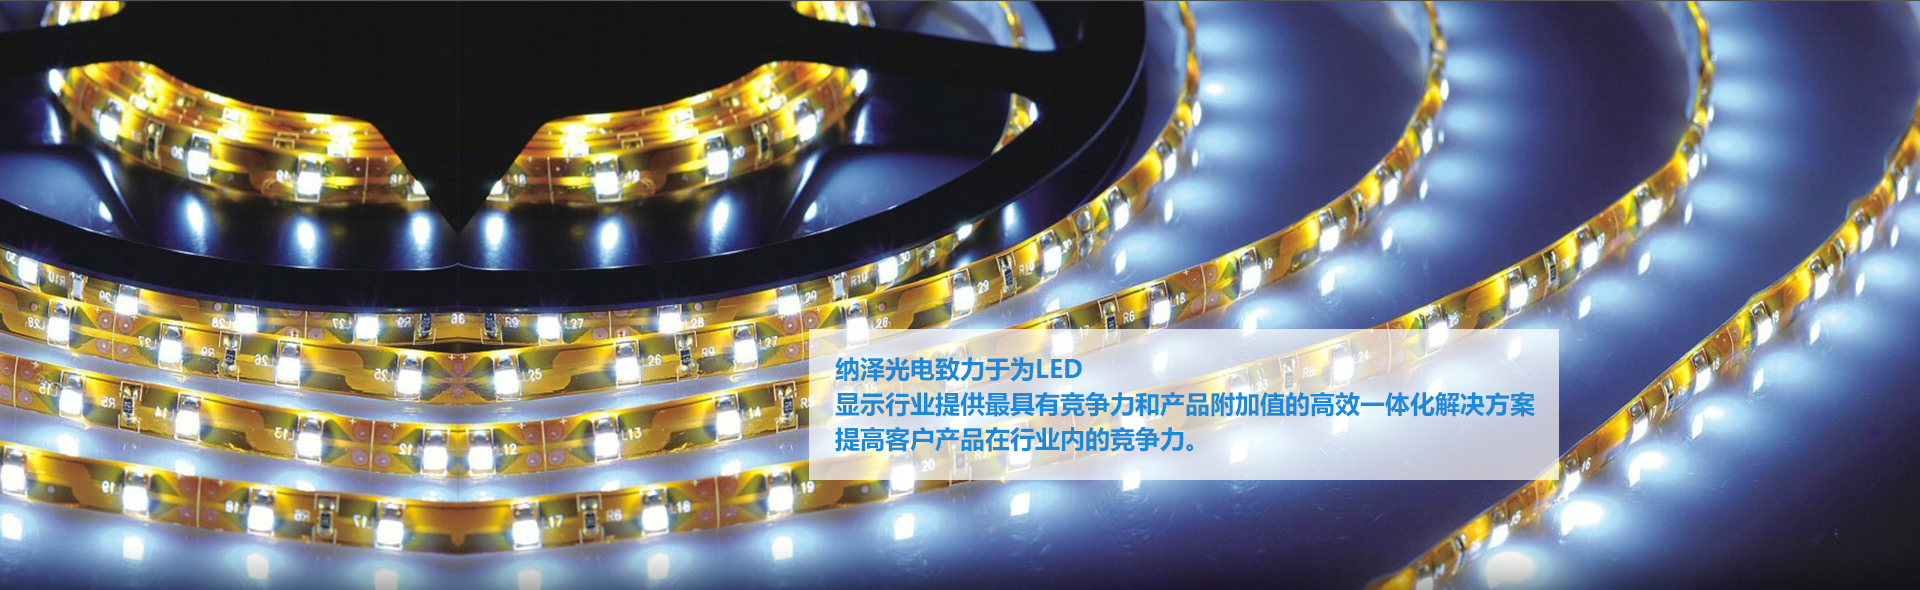 纳泽光电致力于为LED显示行业提供最具竞争力和产品附加值的高